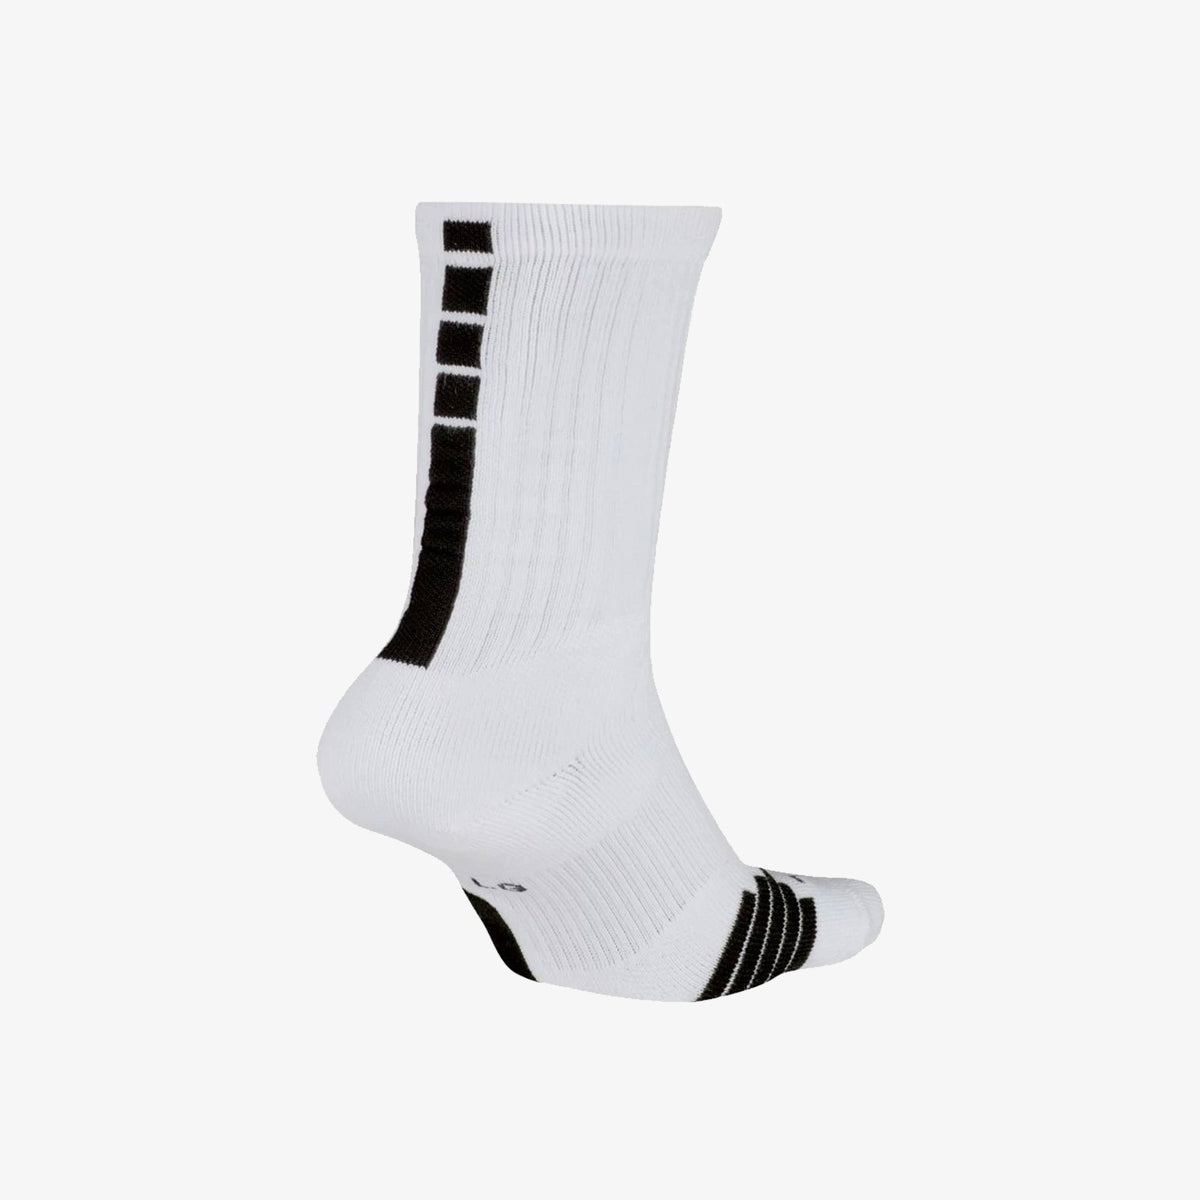 Elite Basketball Crew Socks - White/Black